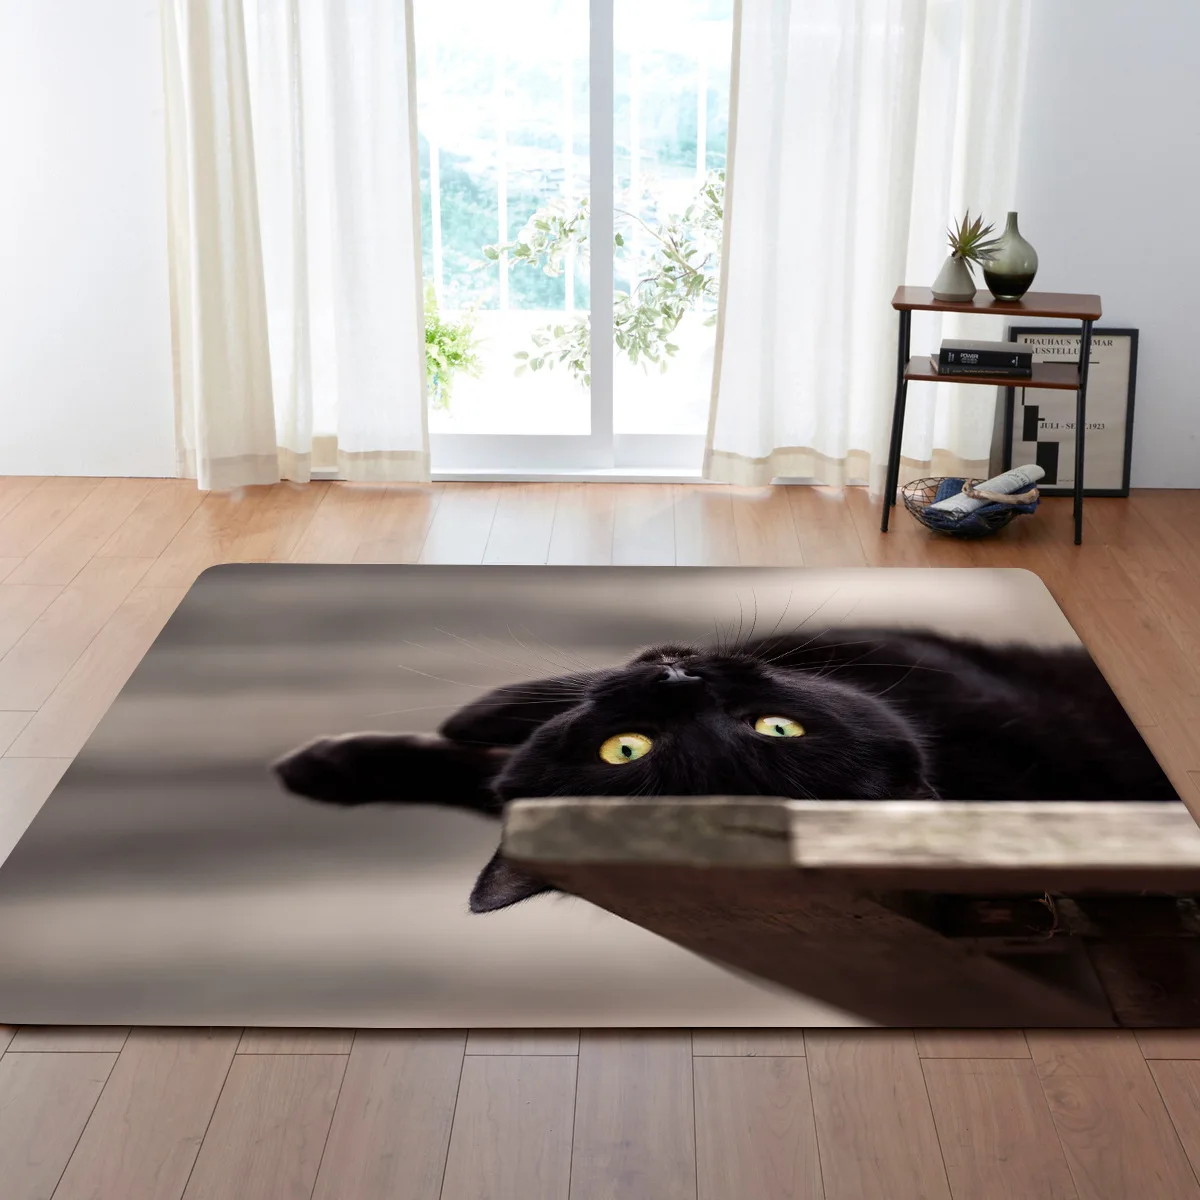 23 вида кошек 3D печатные большие ковры дружественный Кот гостиная украшения Спальня, зал чай стол области коврик мягкая фланель - Цвет: 12